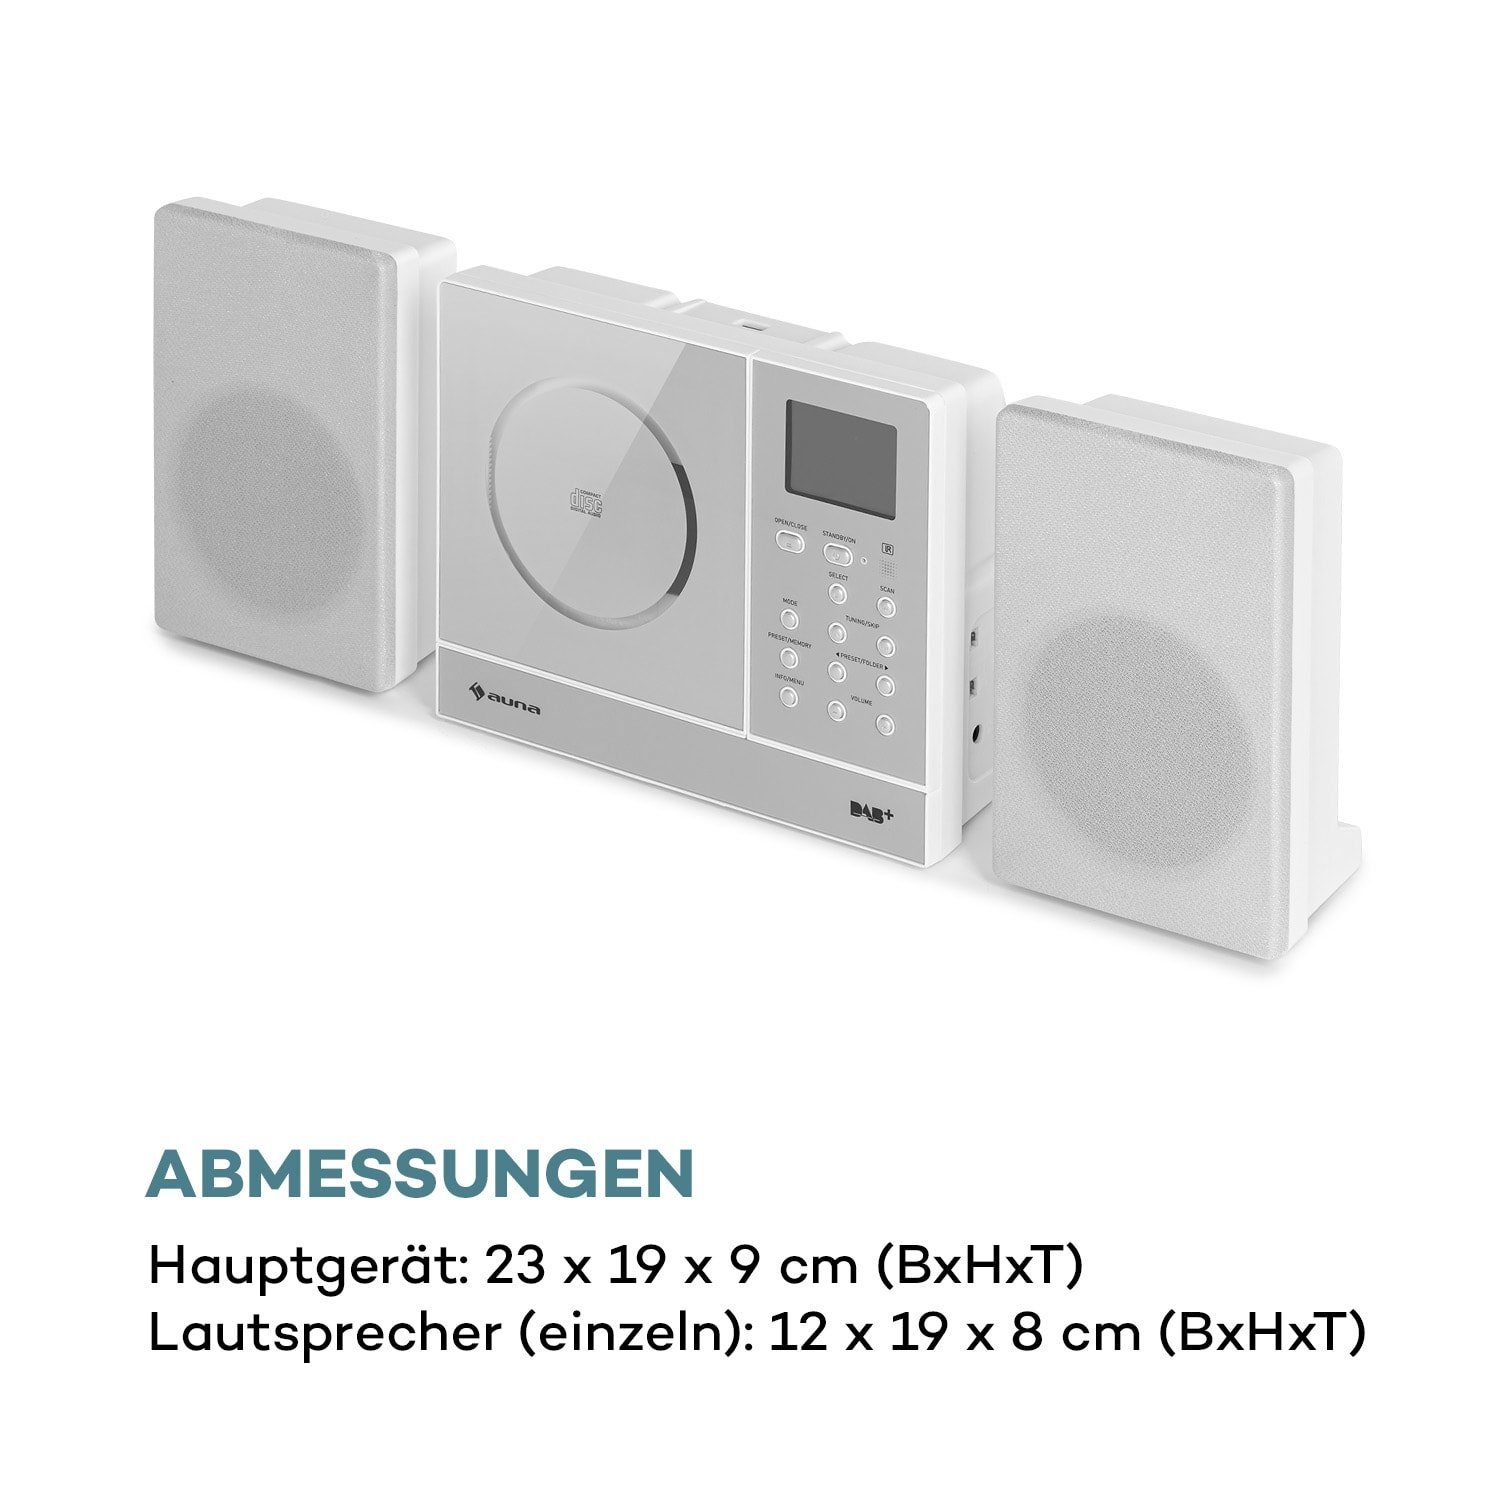 Connect Bluetooth W, Musikanlage) Radio Küchenradio (Internet/DAB+/FM Digitalradio Radio, Stereoanlage Vertical 10 Auna Kompakt